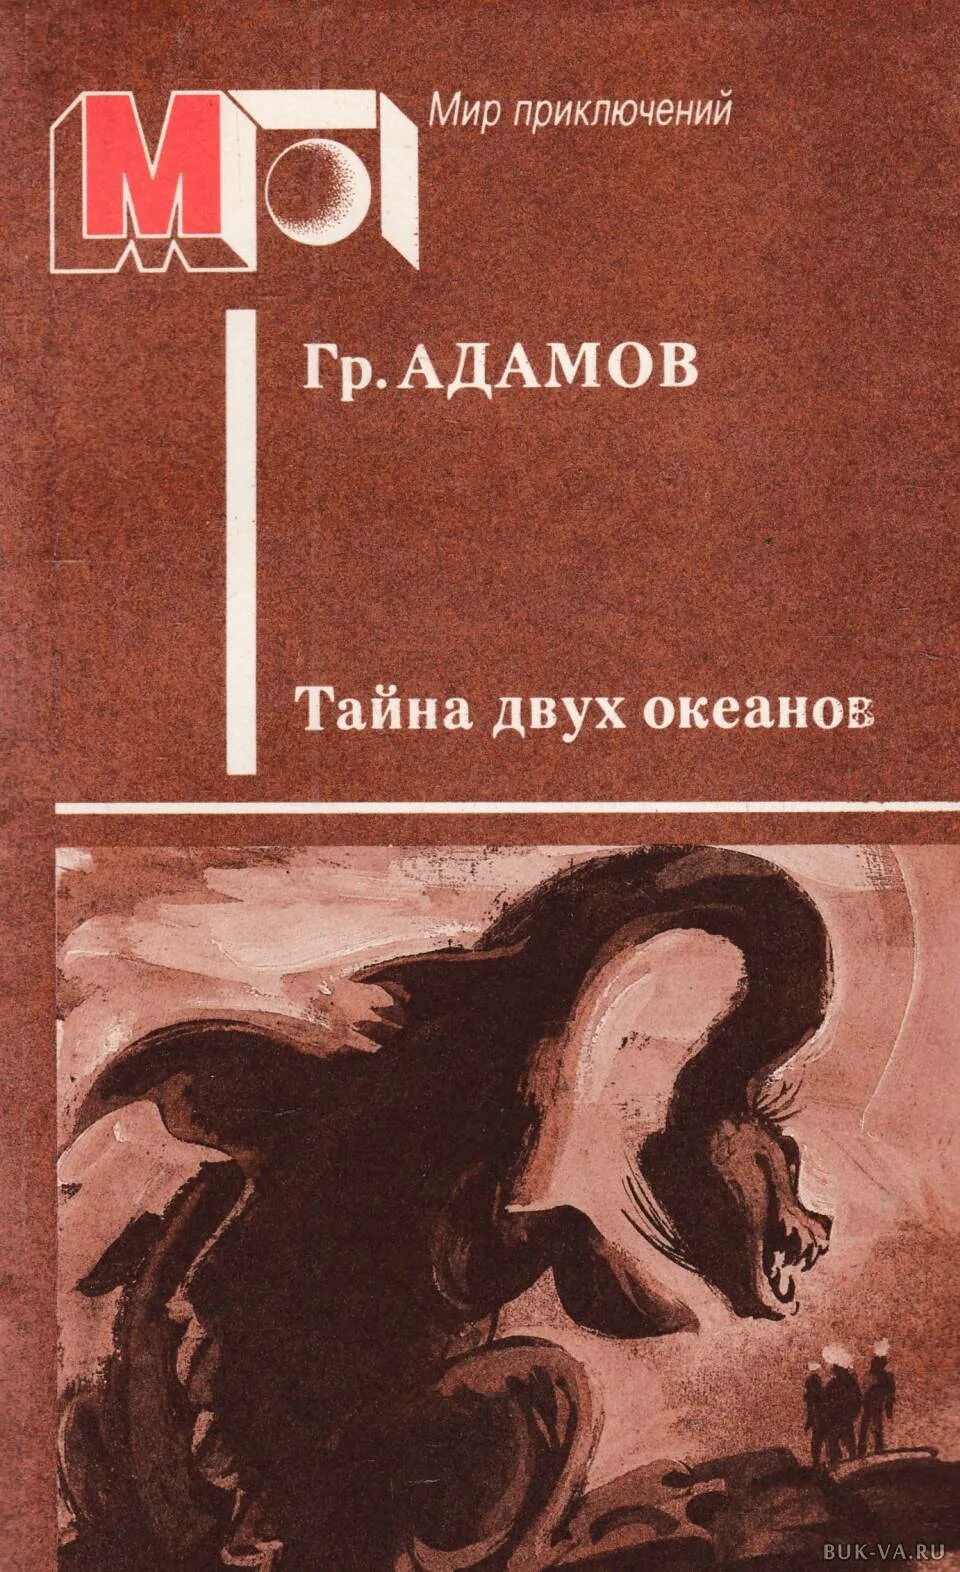 Адамов книги купить. Адамов, г. б. тайна двух океанов 1939.